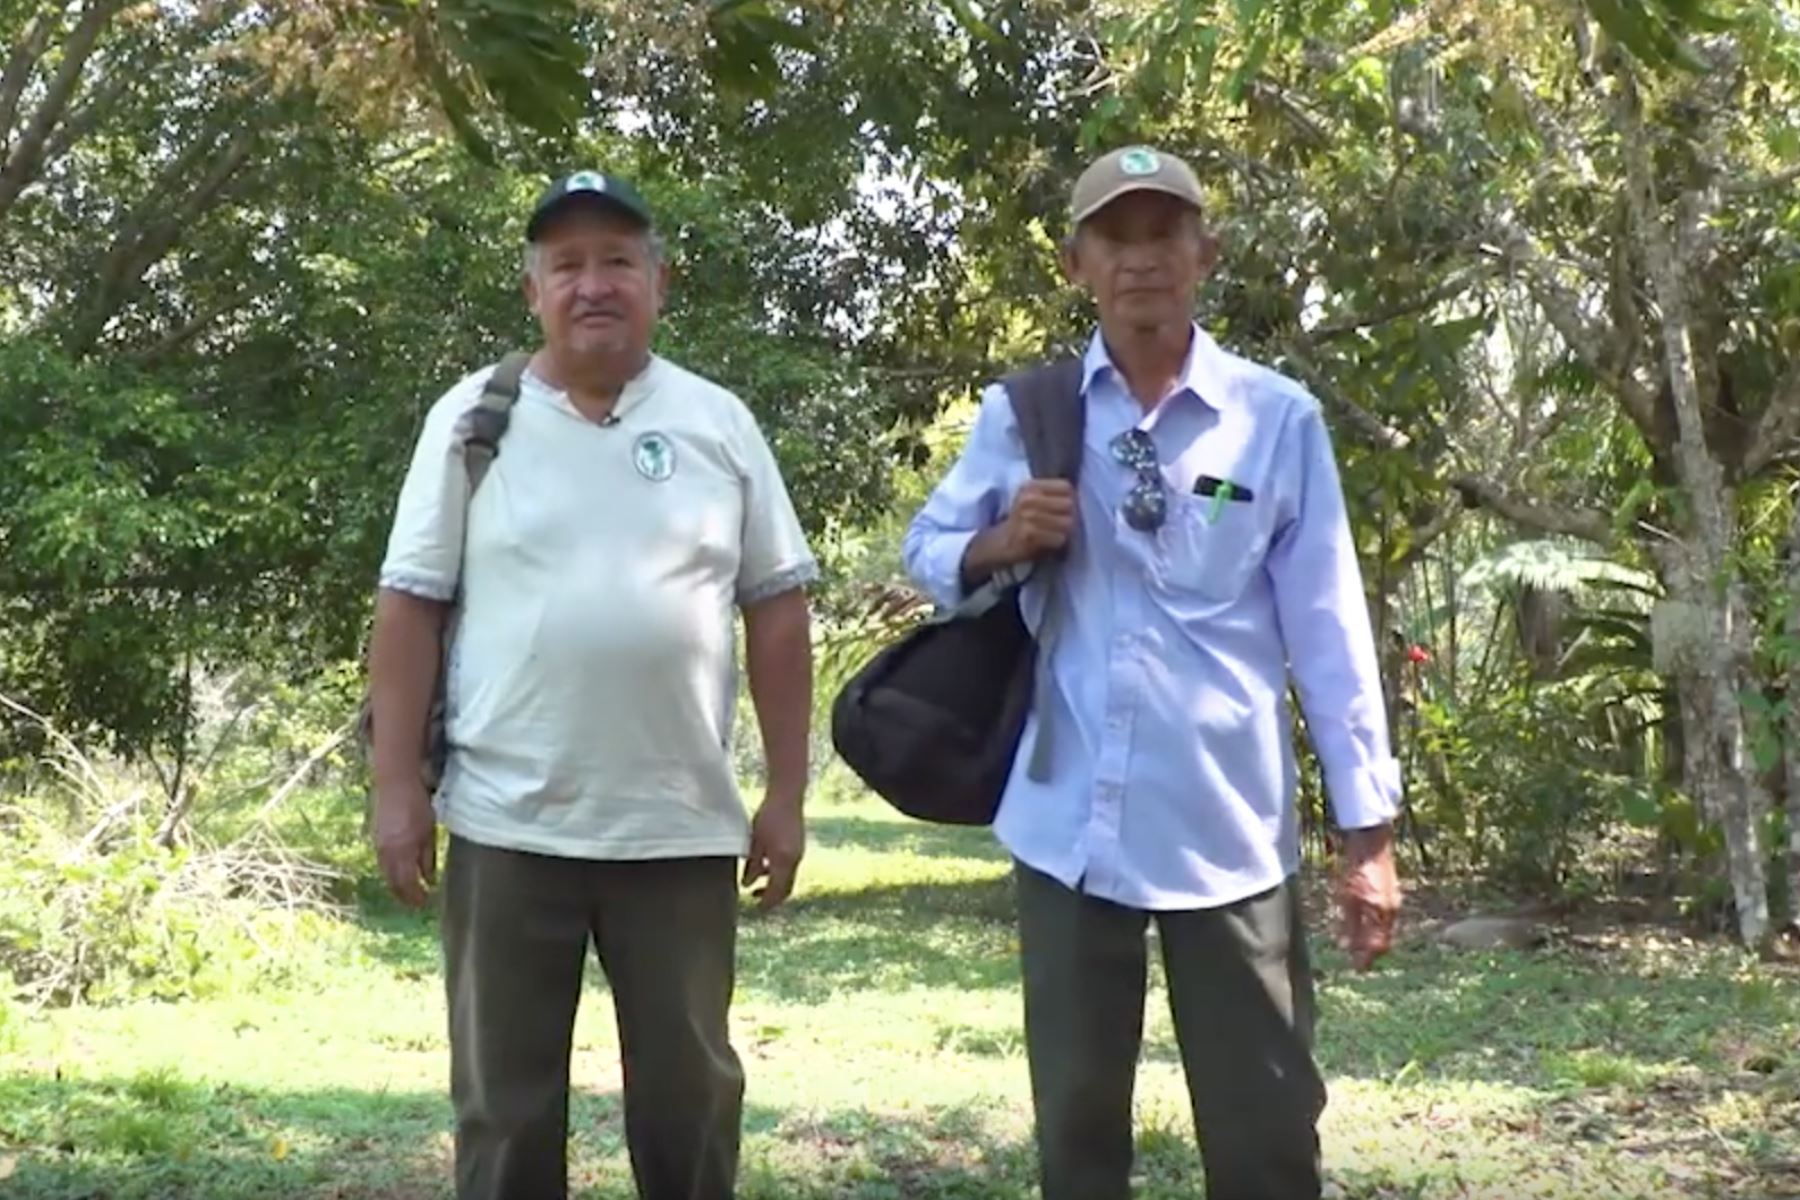 Esaú Hidalgo y Silverio Trejos, son lo sguardianes de los ajíes amazónicos y lideran la asociación de agricultores ecológicos El Pimental de Pucallpa (Ucayali).